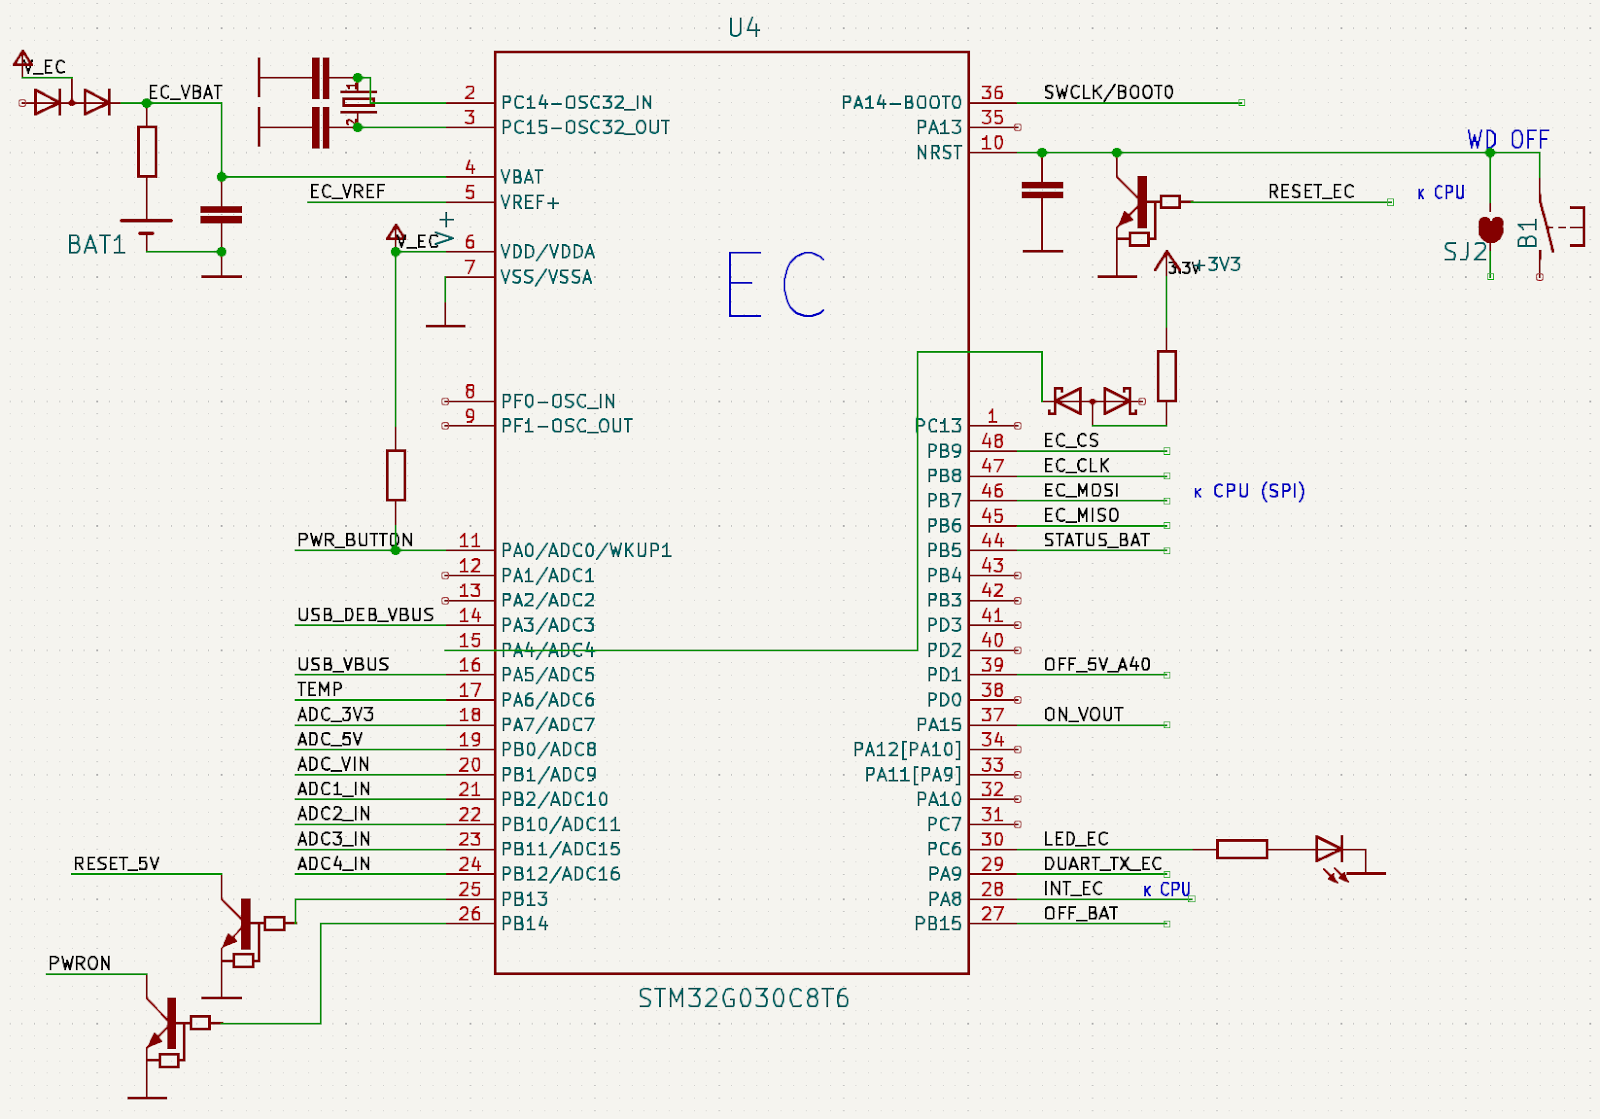 Embedded Controller в контроллере Wiren Board 7.4